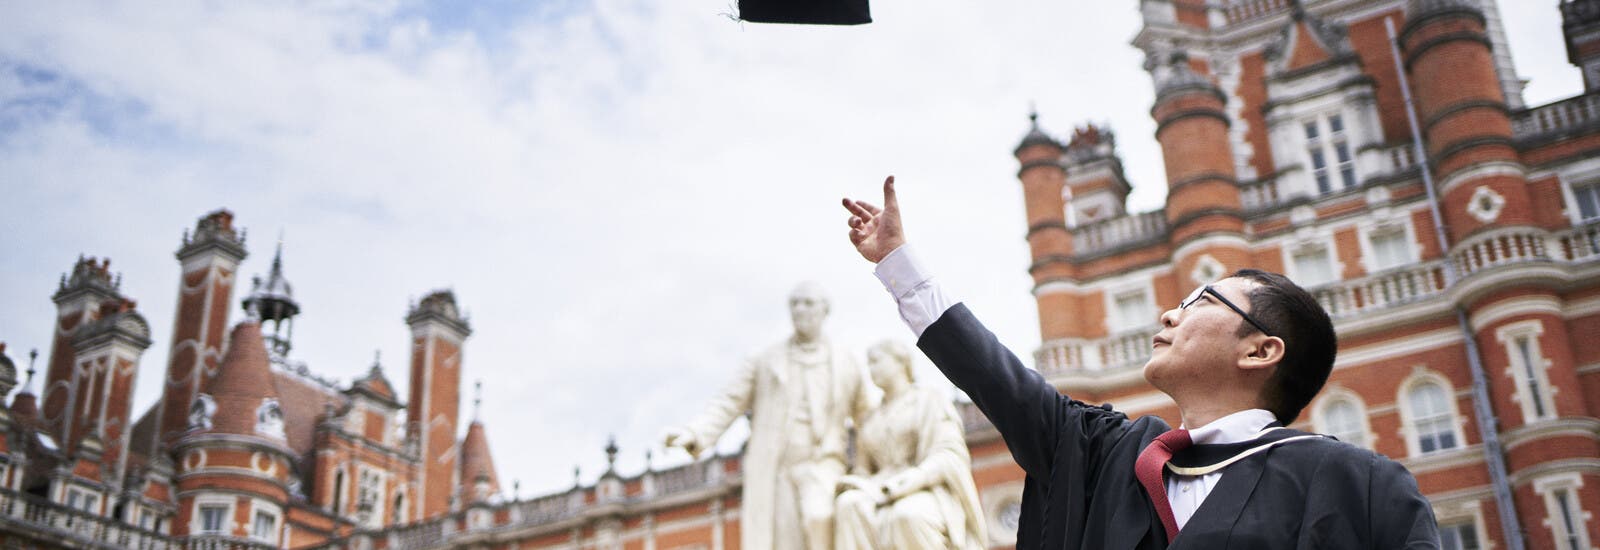 Graduate throwing cap in the air